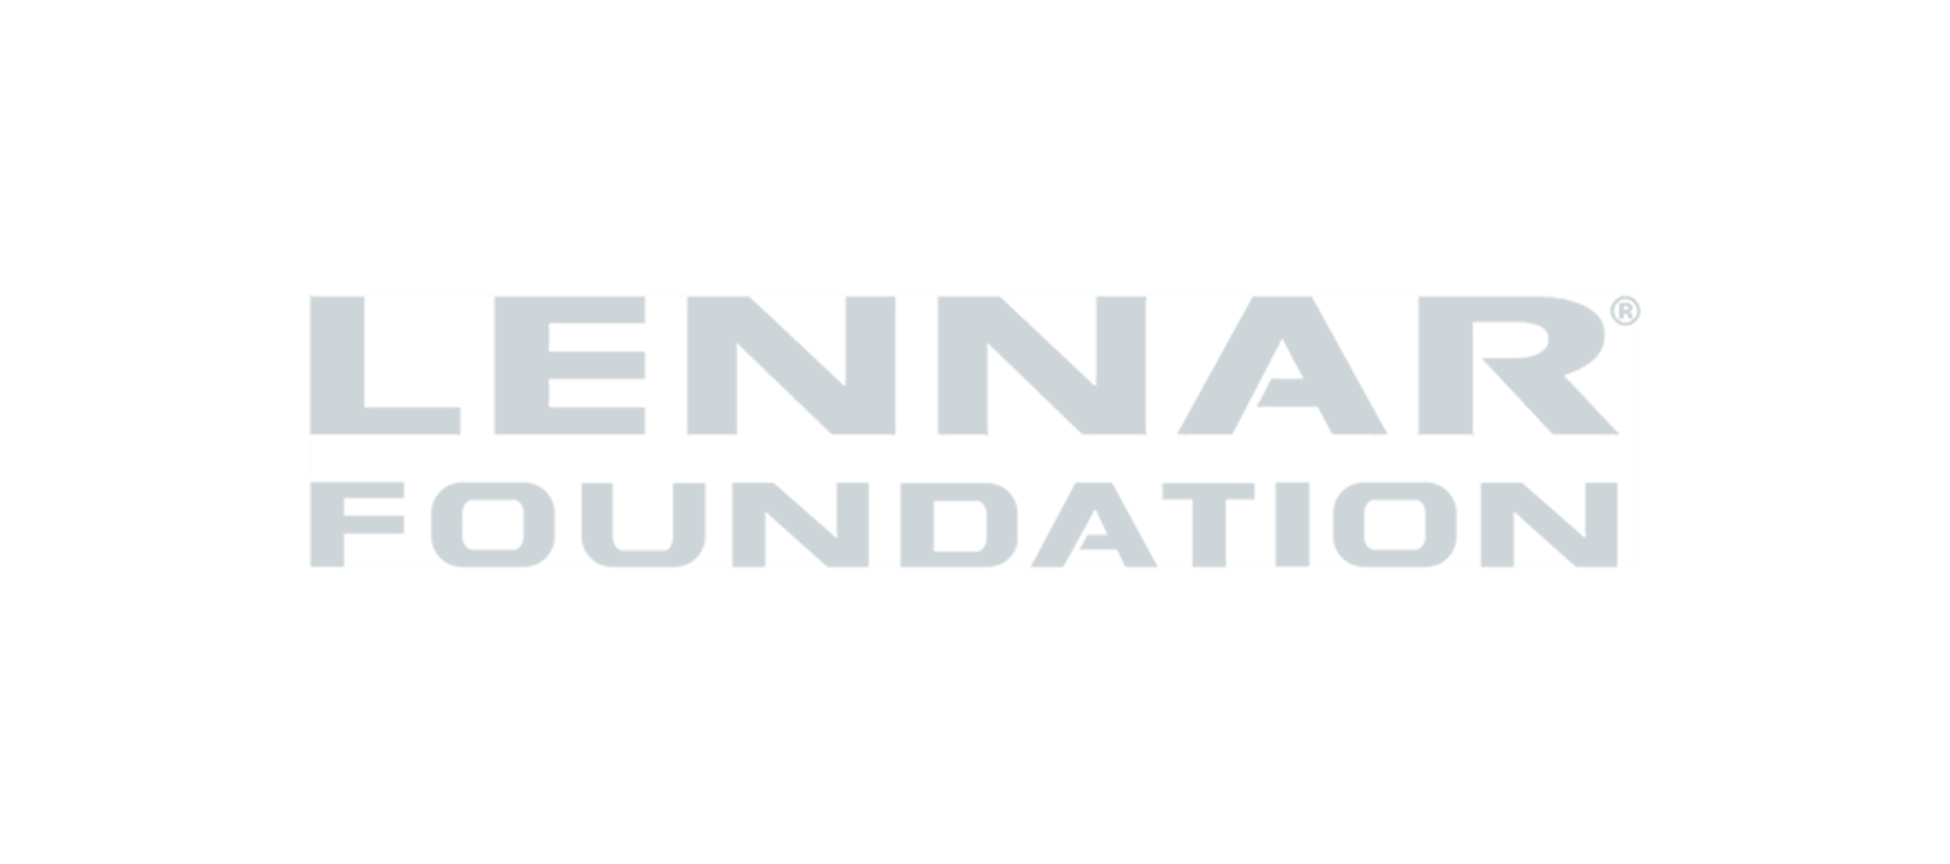 lennar-foundation-logo-600w.png